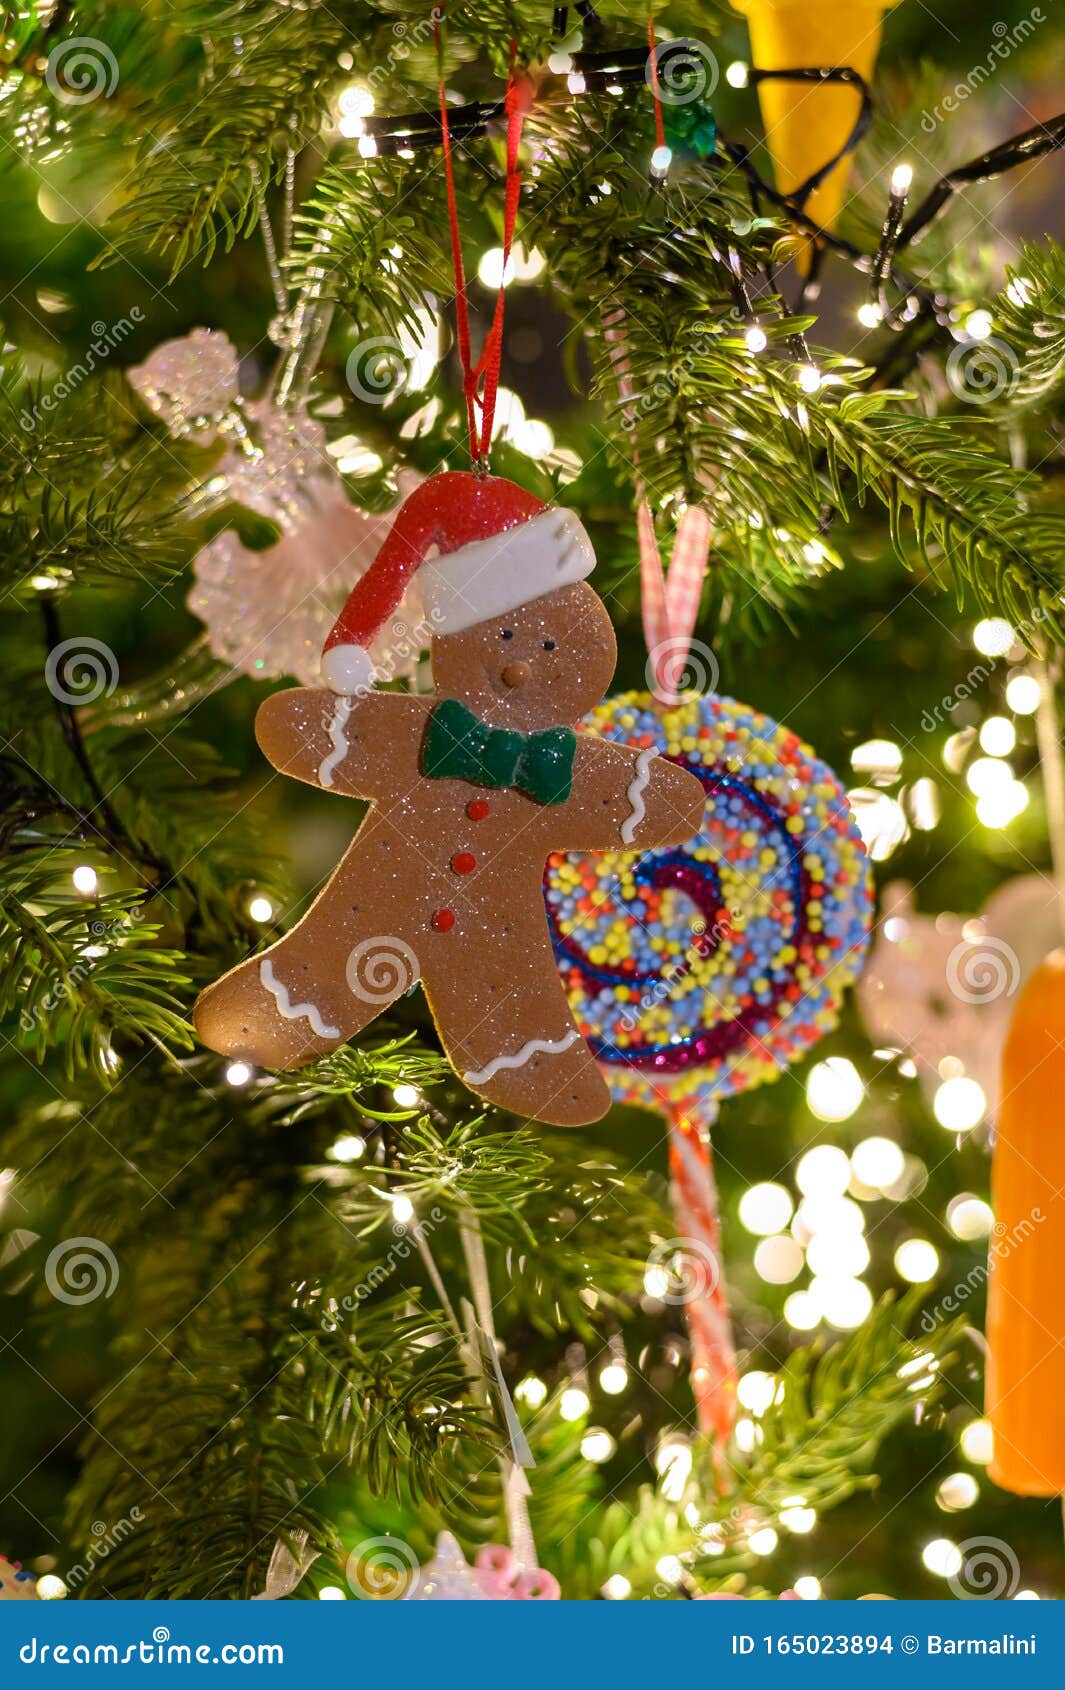 Compartir 39+ imagen arbol de navidad decorado con galletas de jengibre